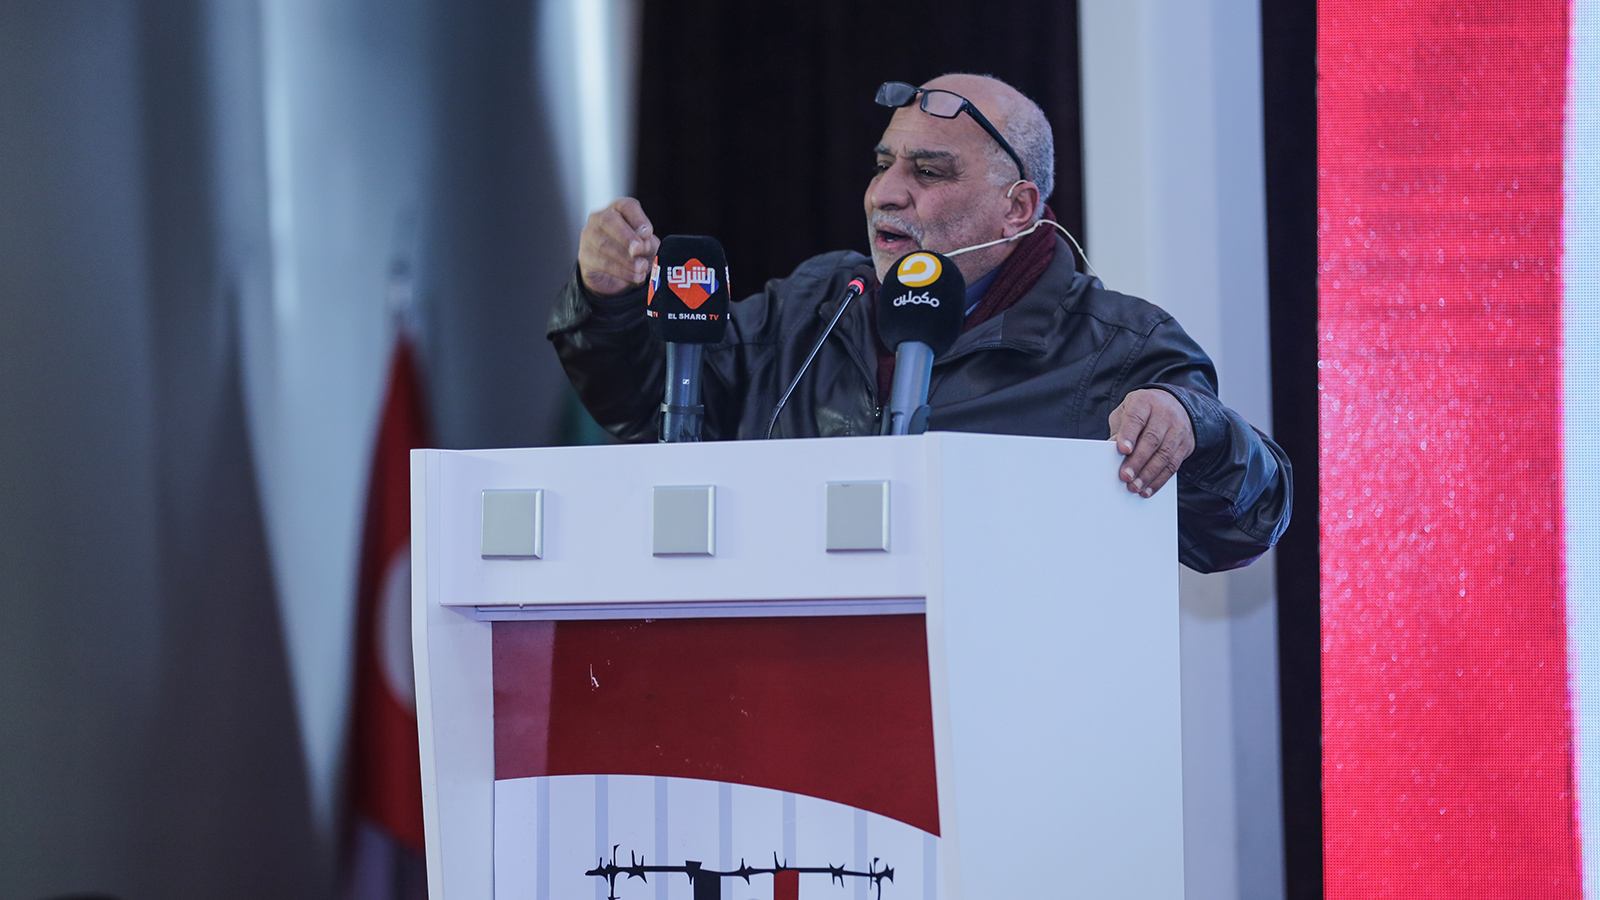 ‪صلاح مدني: لن يأتي النصر إلا بالتوحد وإزالة الخلافات السياسية بين المعارضين المصريين‬ (الجزيرة)